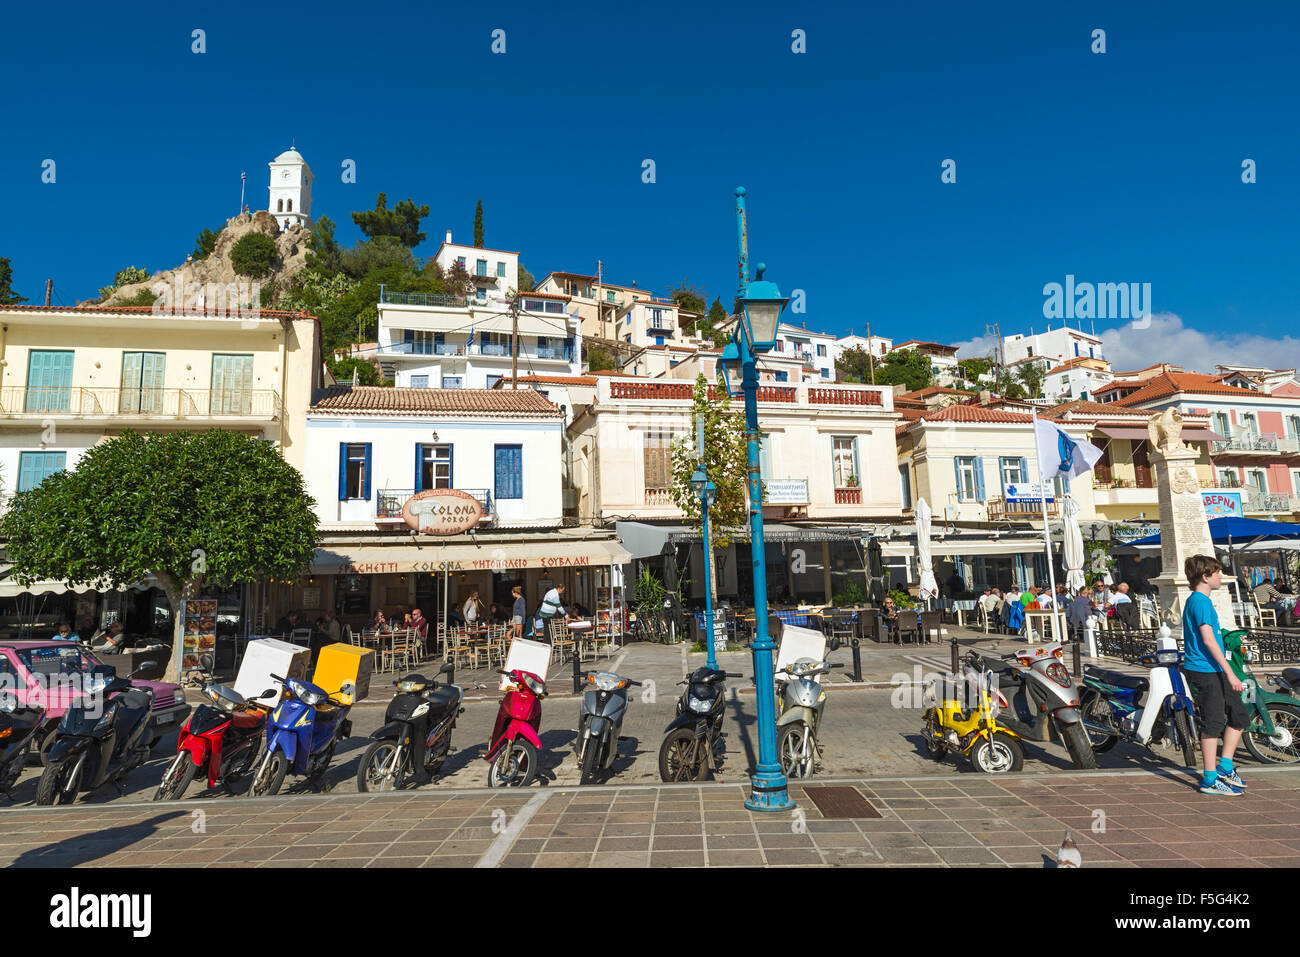 POROS, GREECE-OCTOBER 25, 2015: Gente en la ciudad de Poros, a a small Greek island-pair in the southern part of the Saronic Gul Stock Photo